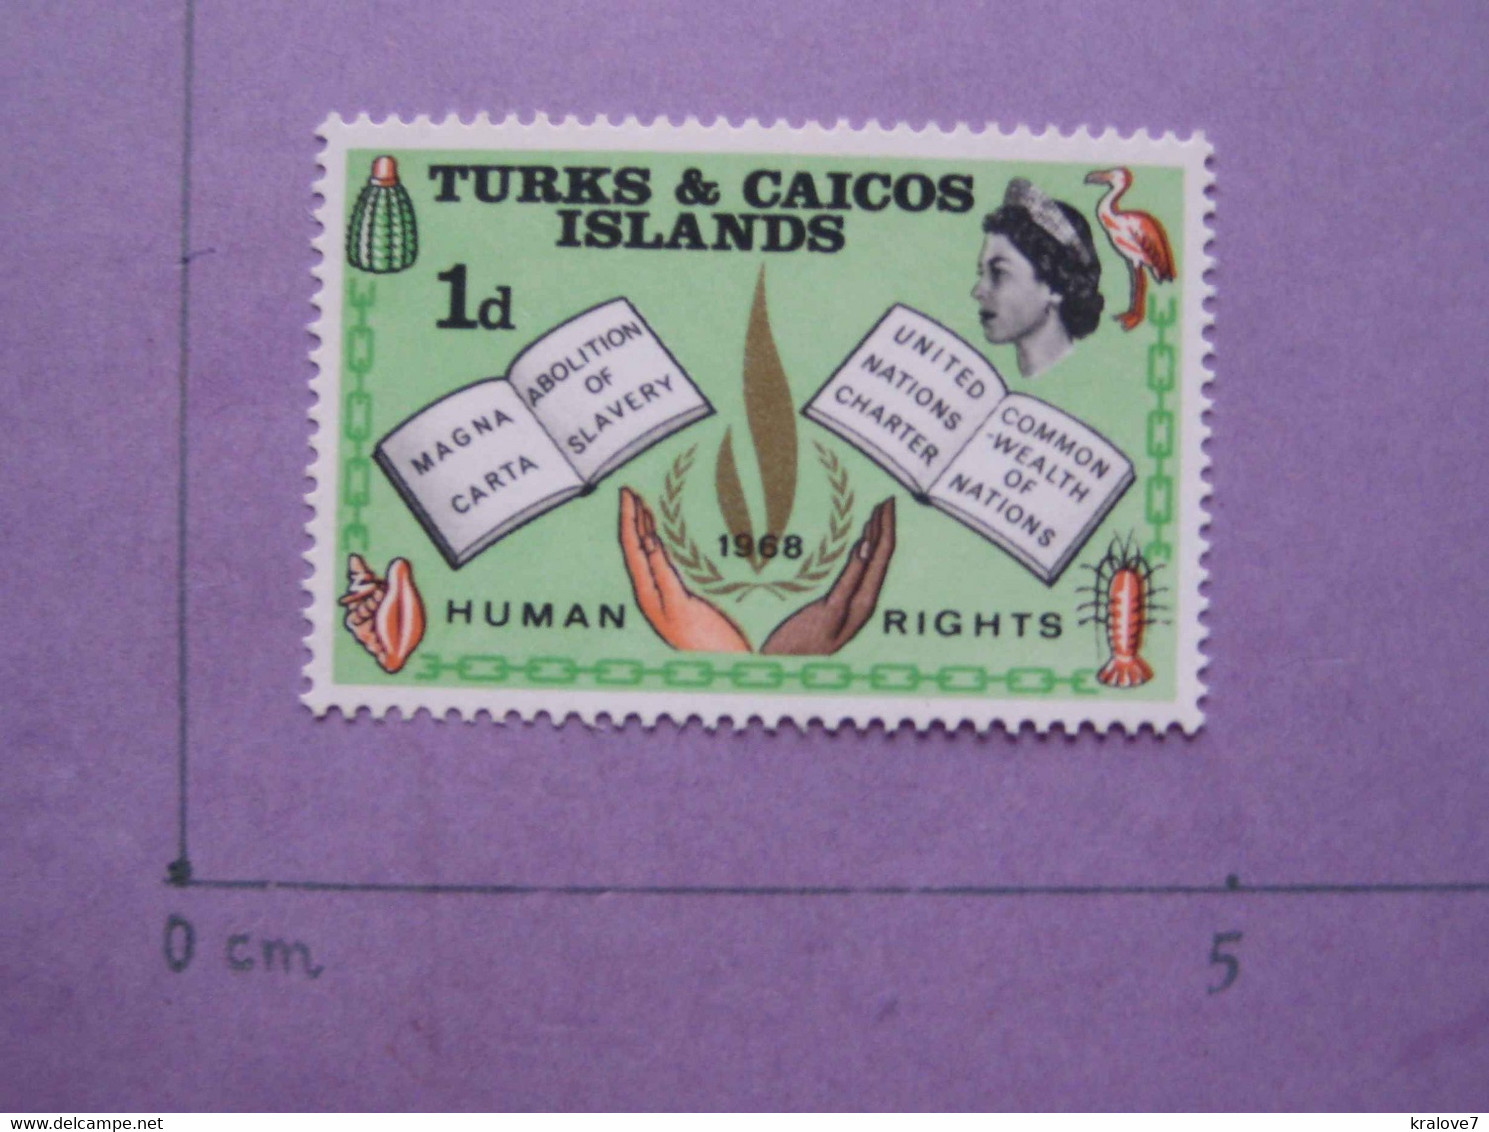 TURKS CAICOS. 2 TIMBRES. NEUF. NOEL HUMAN RIGHTS. RELIGION 1977-1968 CHRISTMAS RELIGIONS NAVIDAD - Turcas Y Caicos